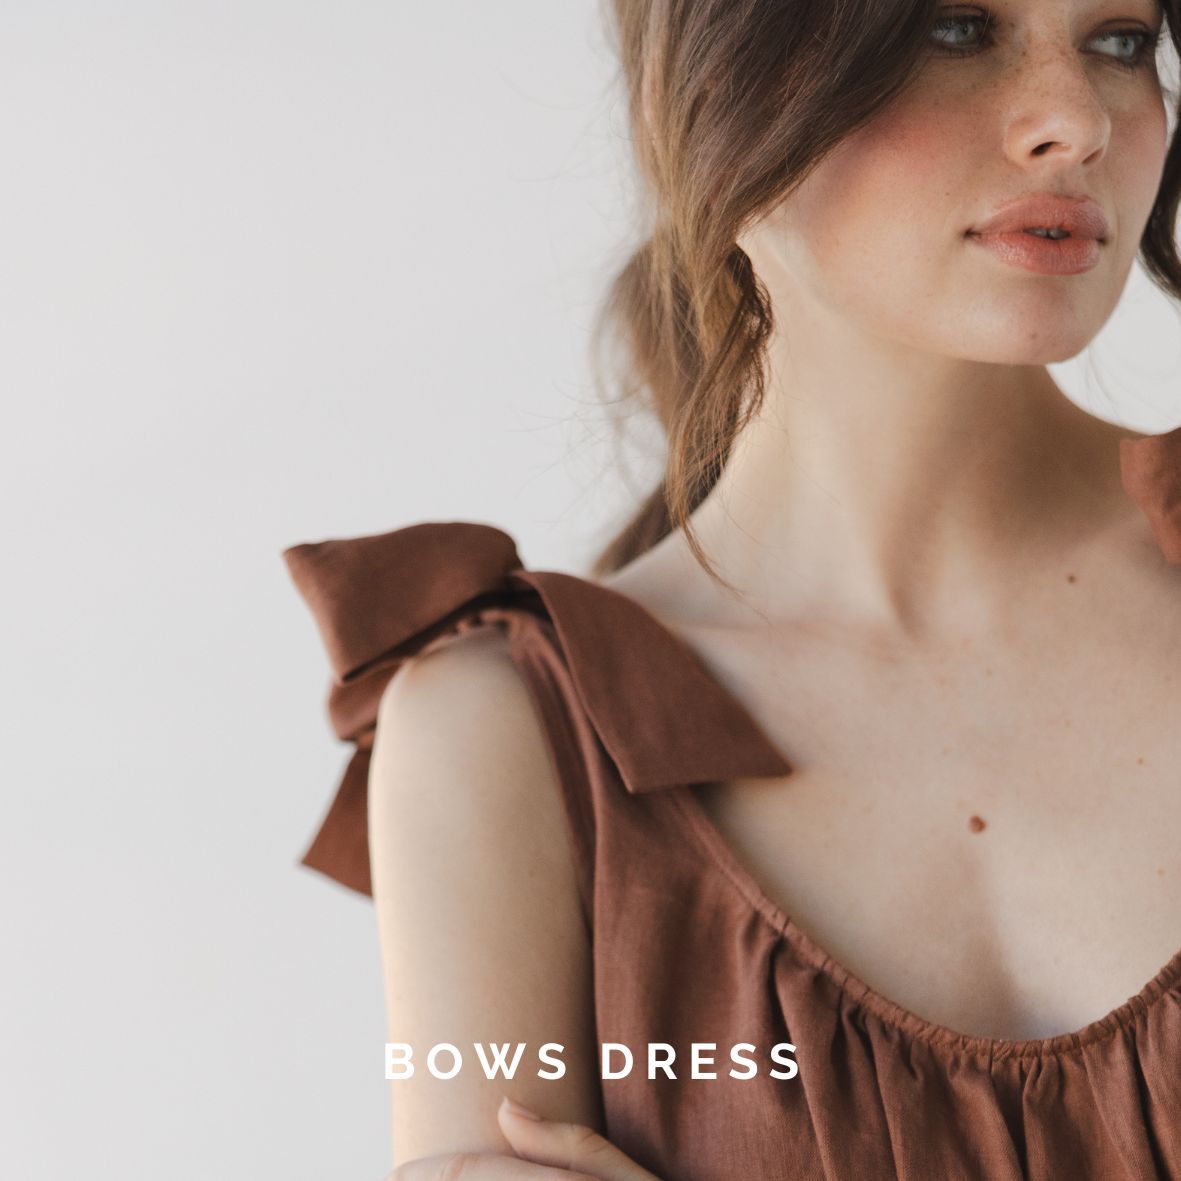 Bows Dress